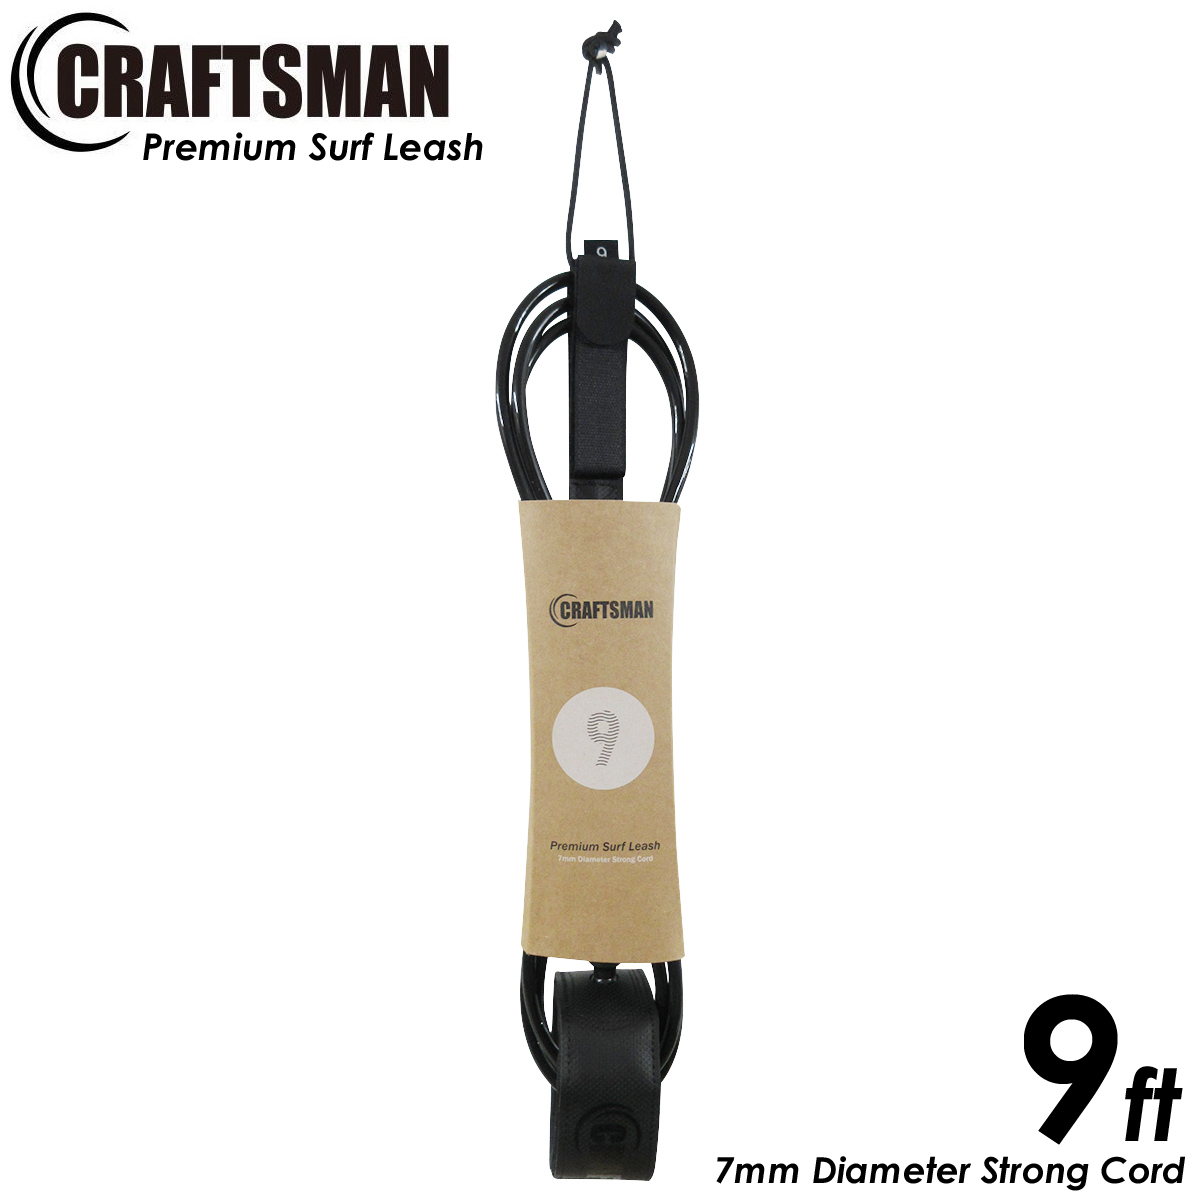 CRAFTSMAN Premium Surf Leash 9ft 足首 Ragular 7mmコード リーシュコード ロングボード レギュラー サーフィン リーシュ 軽量カフ カフ内側ノンスリップメッシュスキン仕様